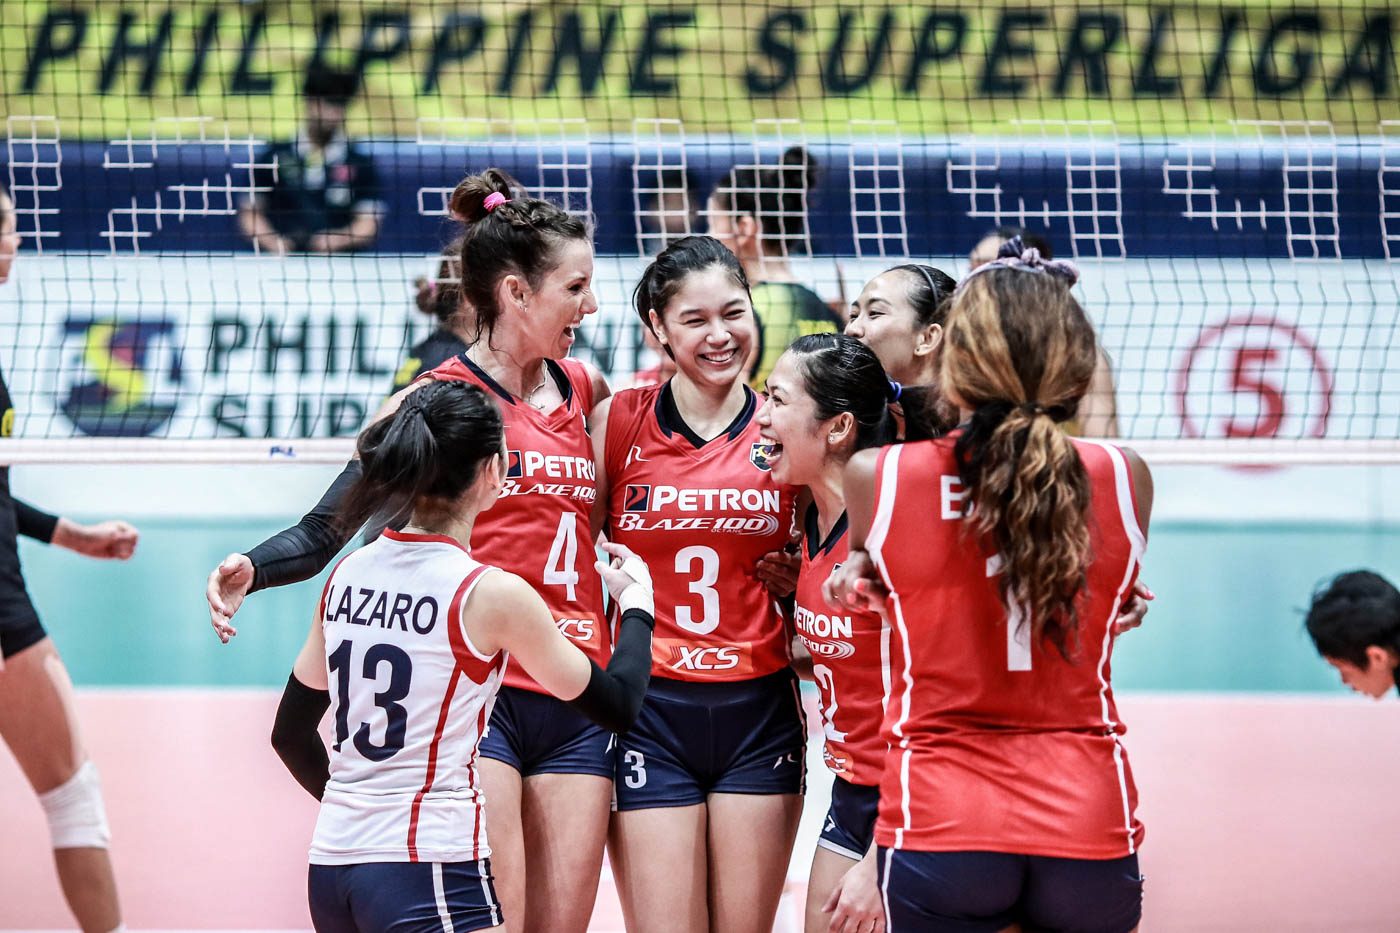 PSL: Petron sets sights on All-Filipino title run